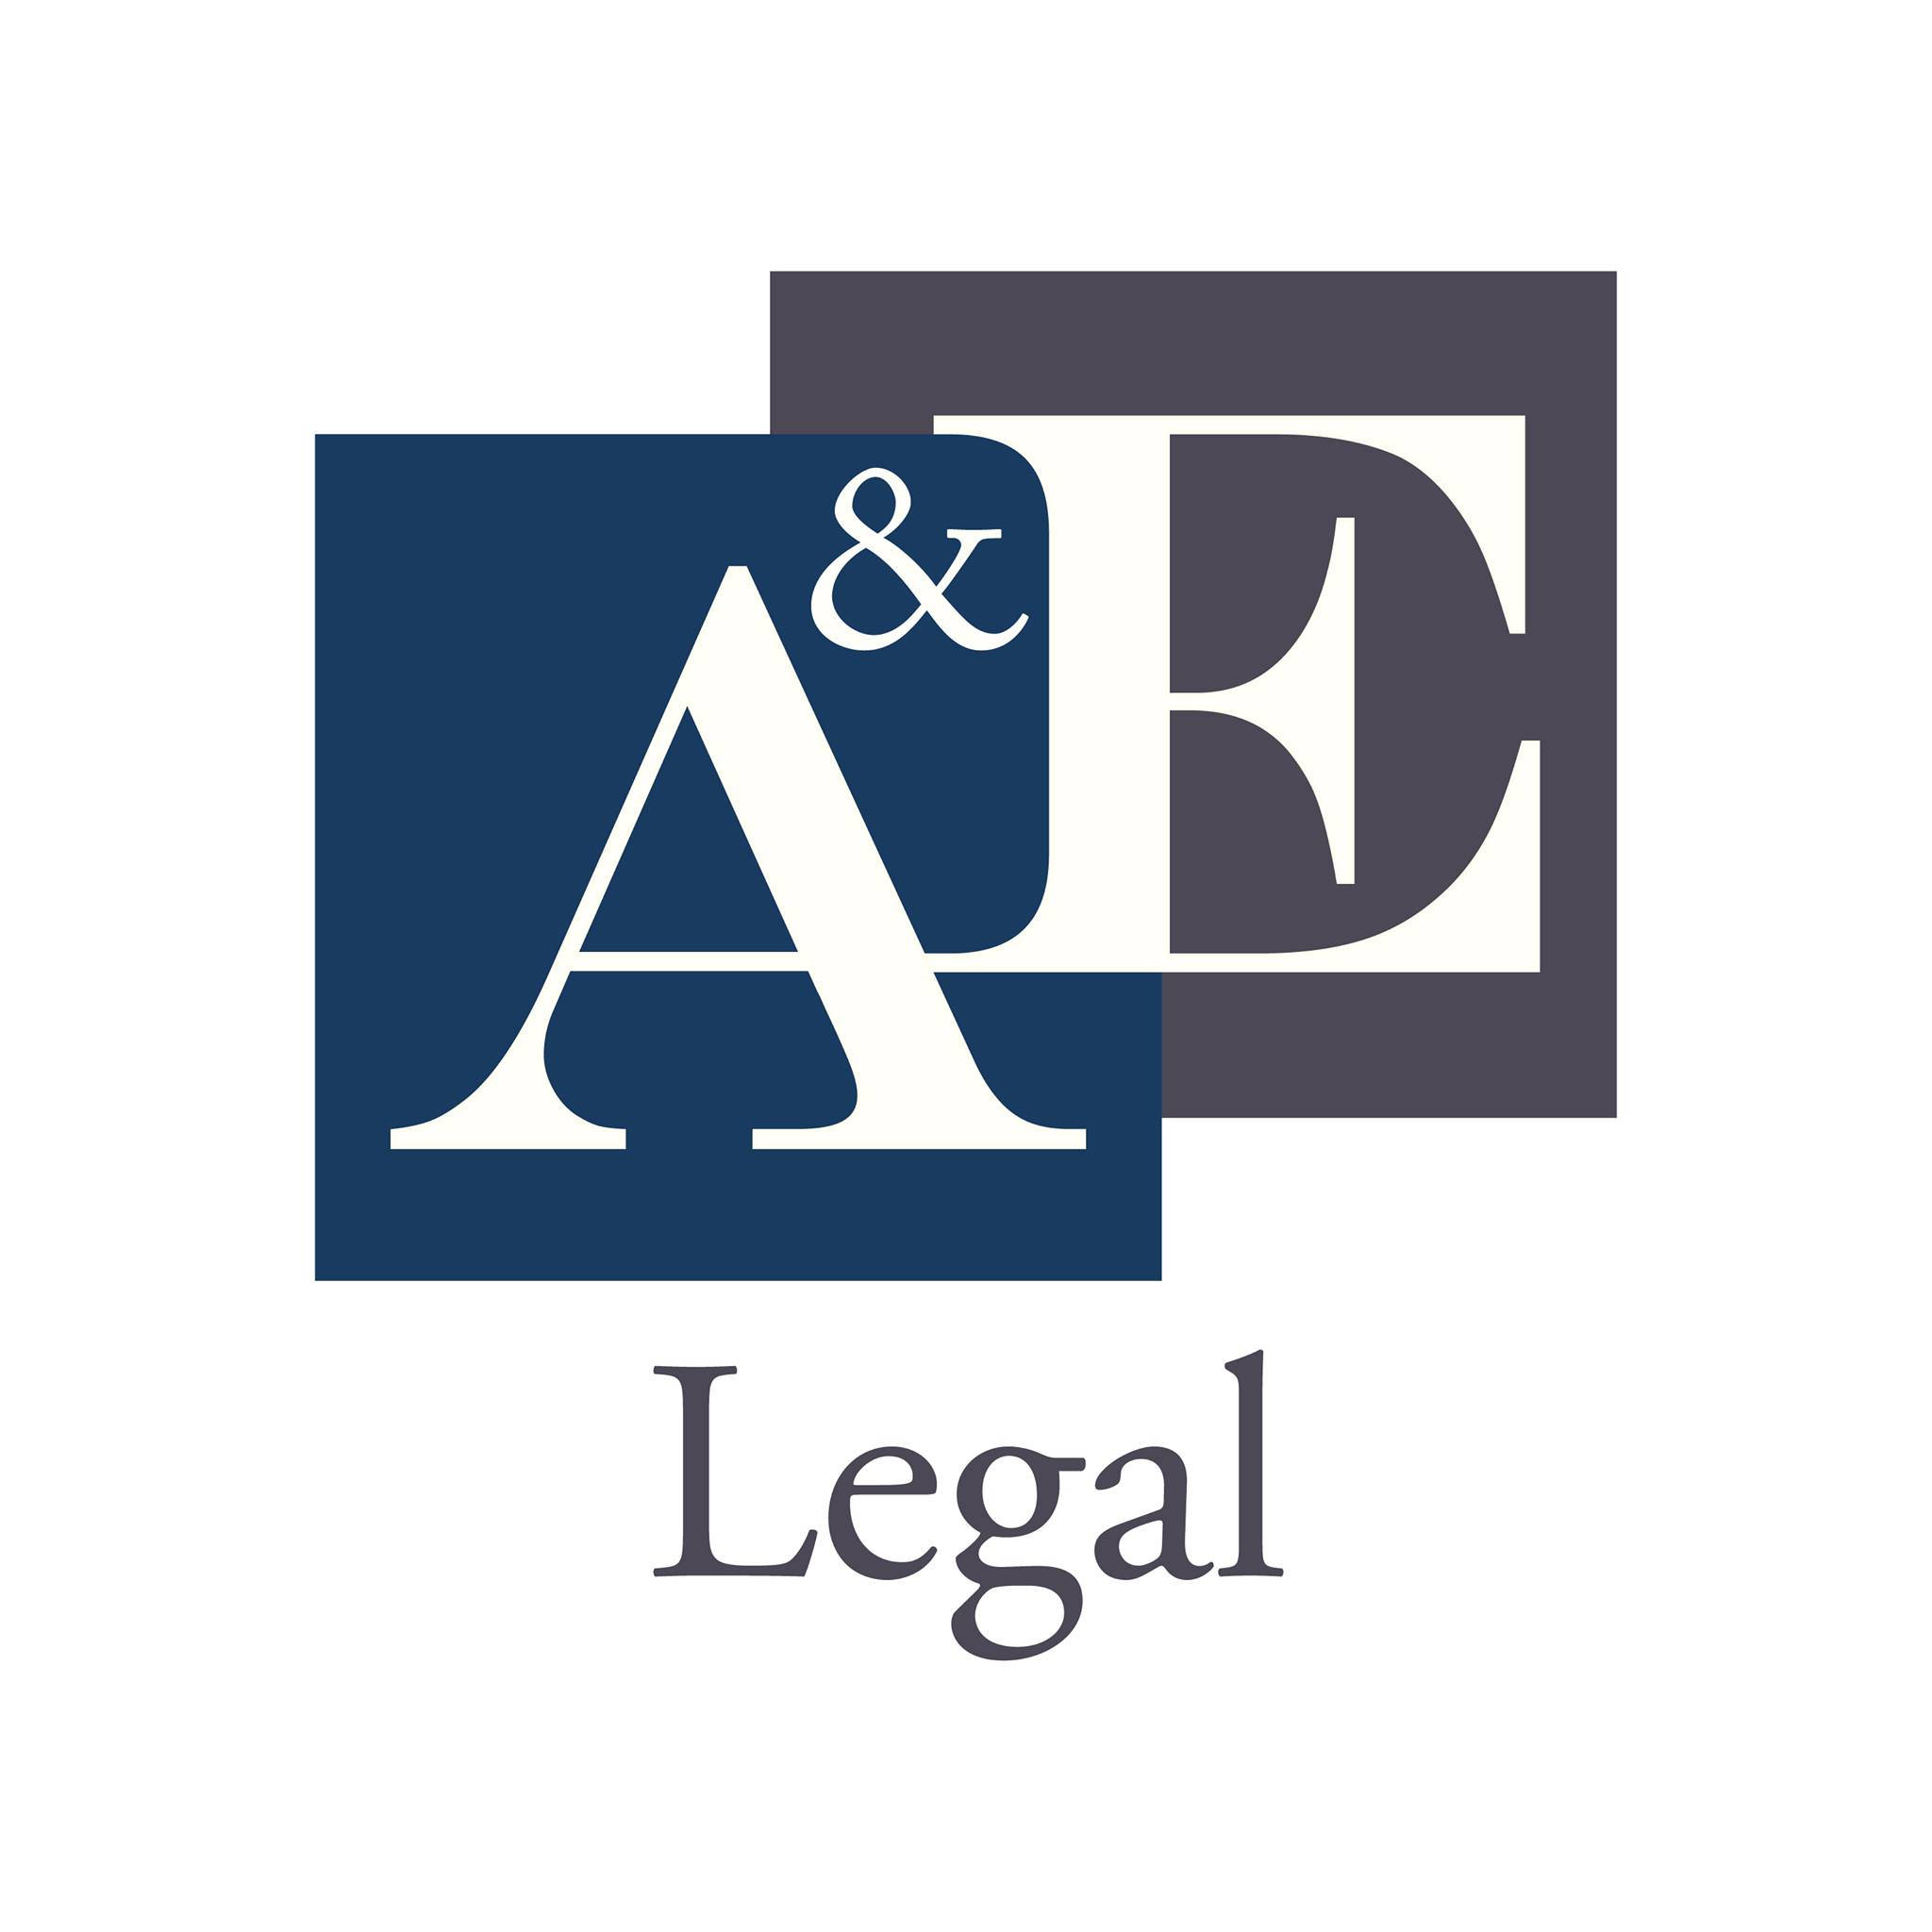 Company logo of A&E Legal